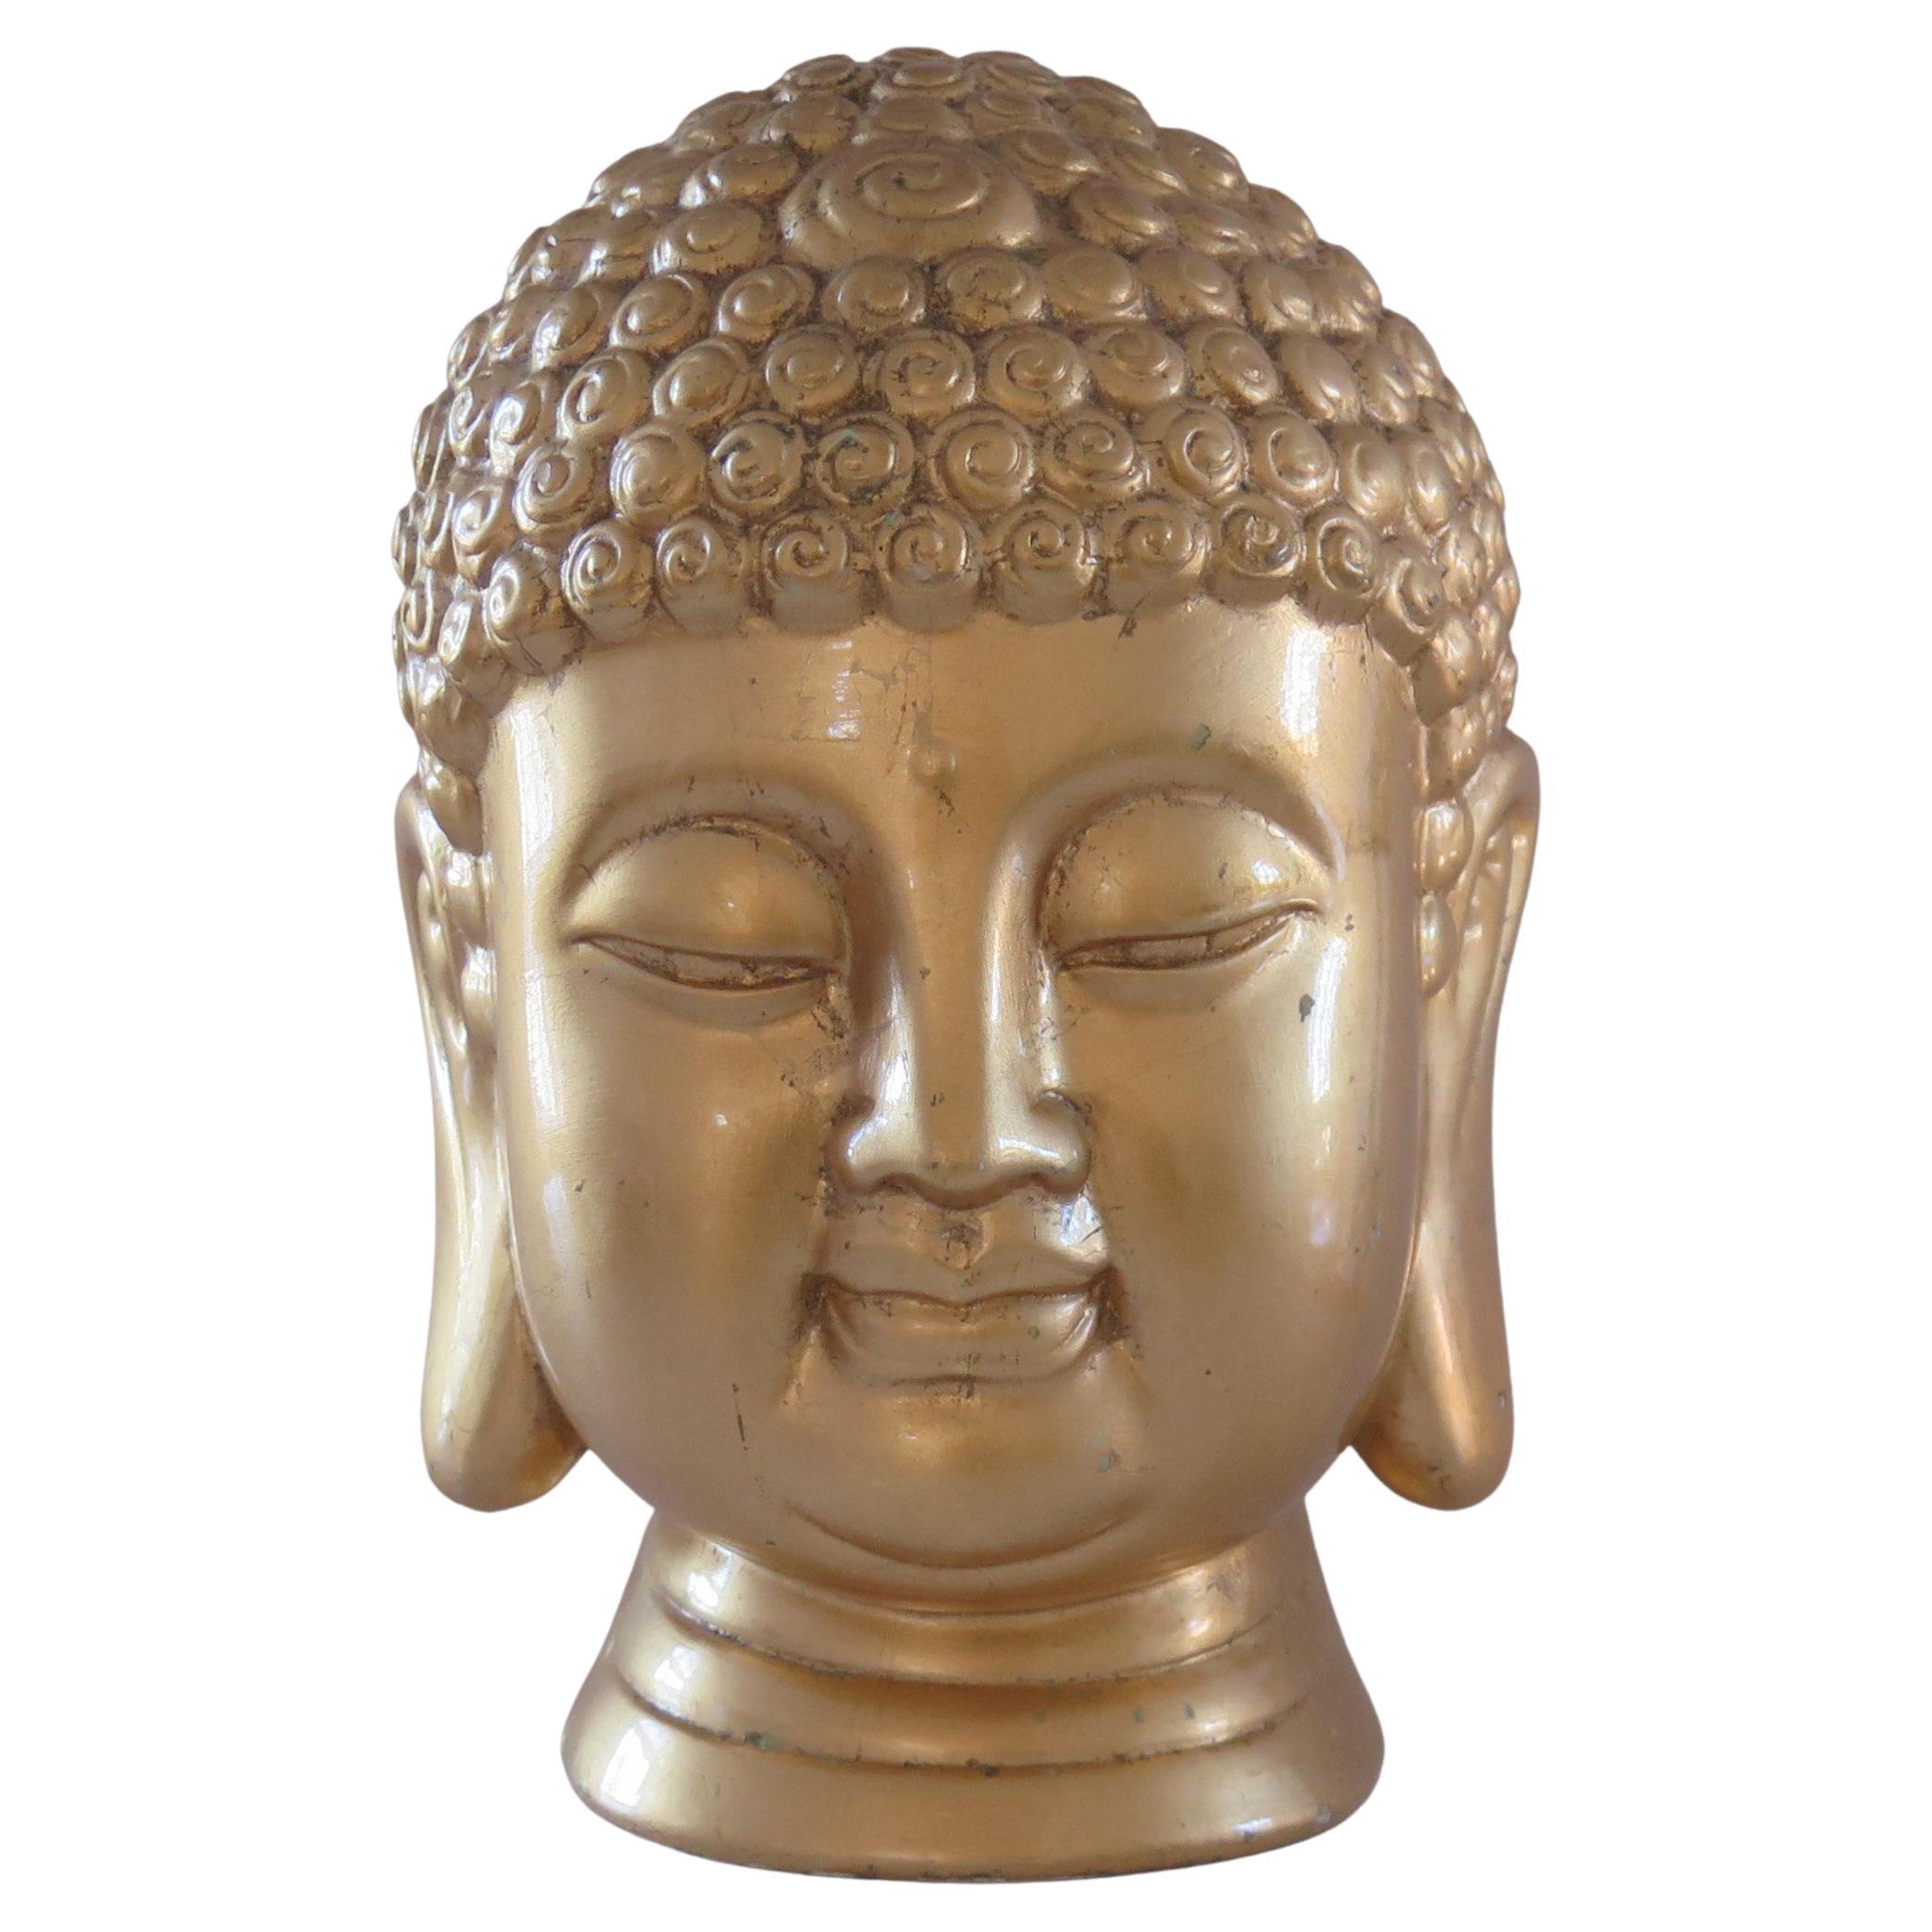 Großer Keramik-Buddha-Kopf oder -Büste mit echtem Blattgold, asiatische Herkunft